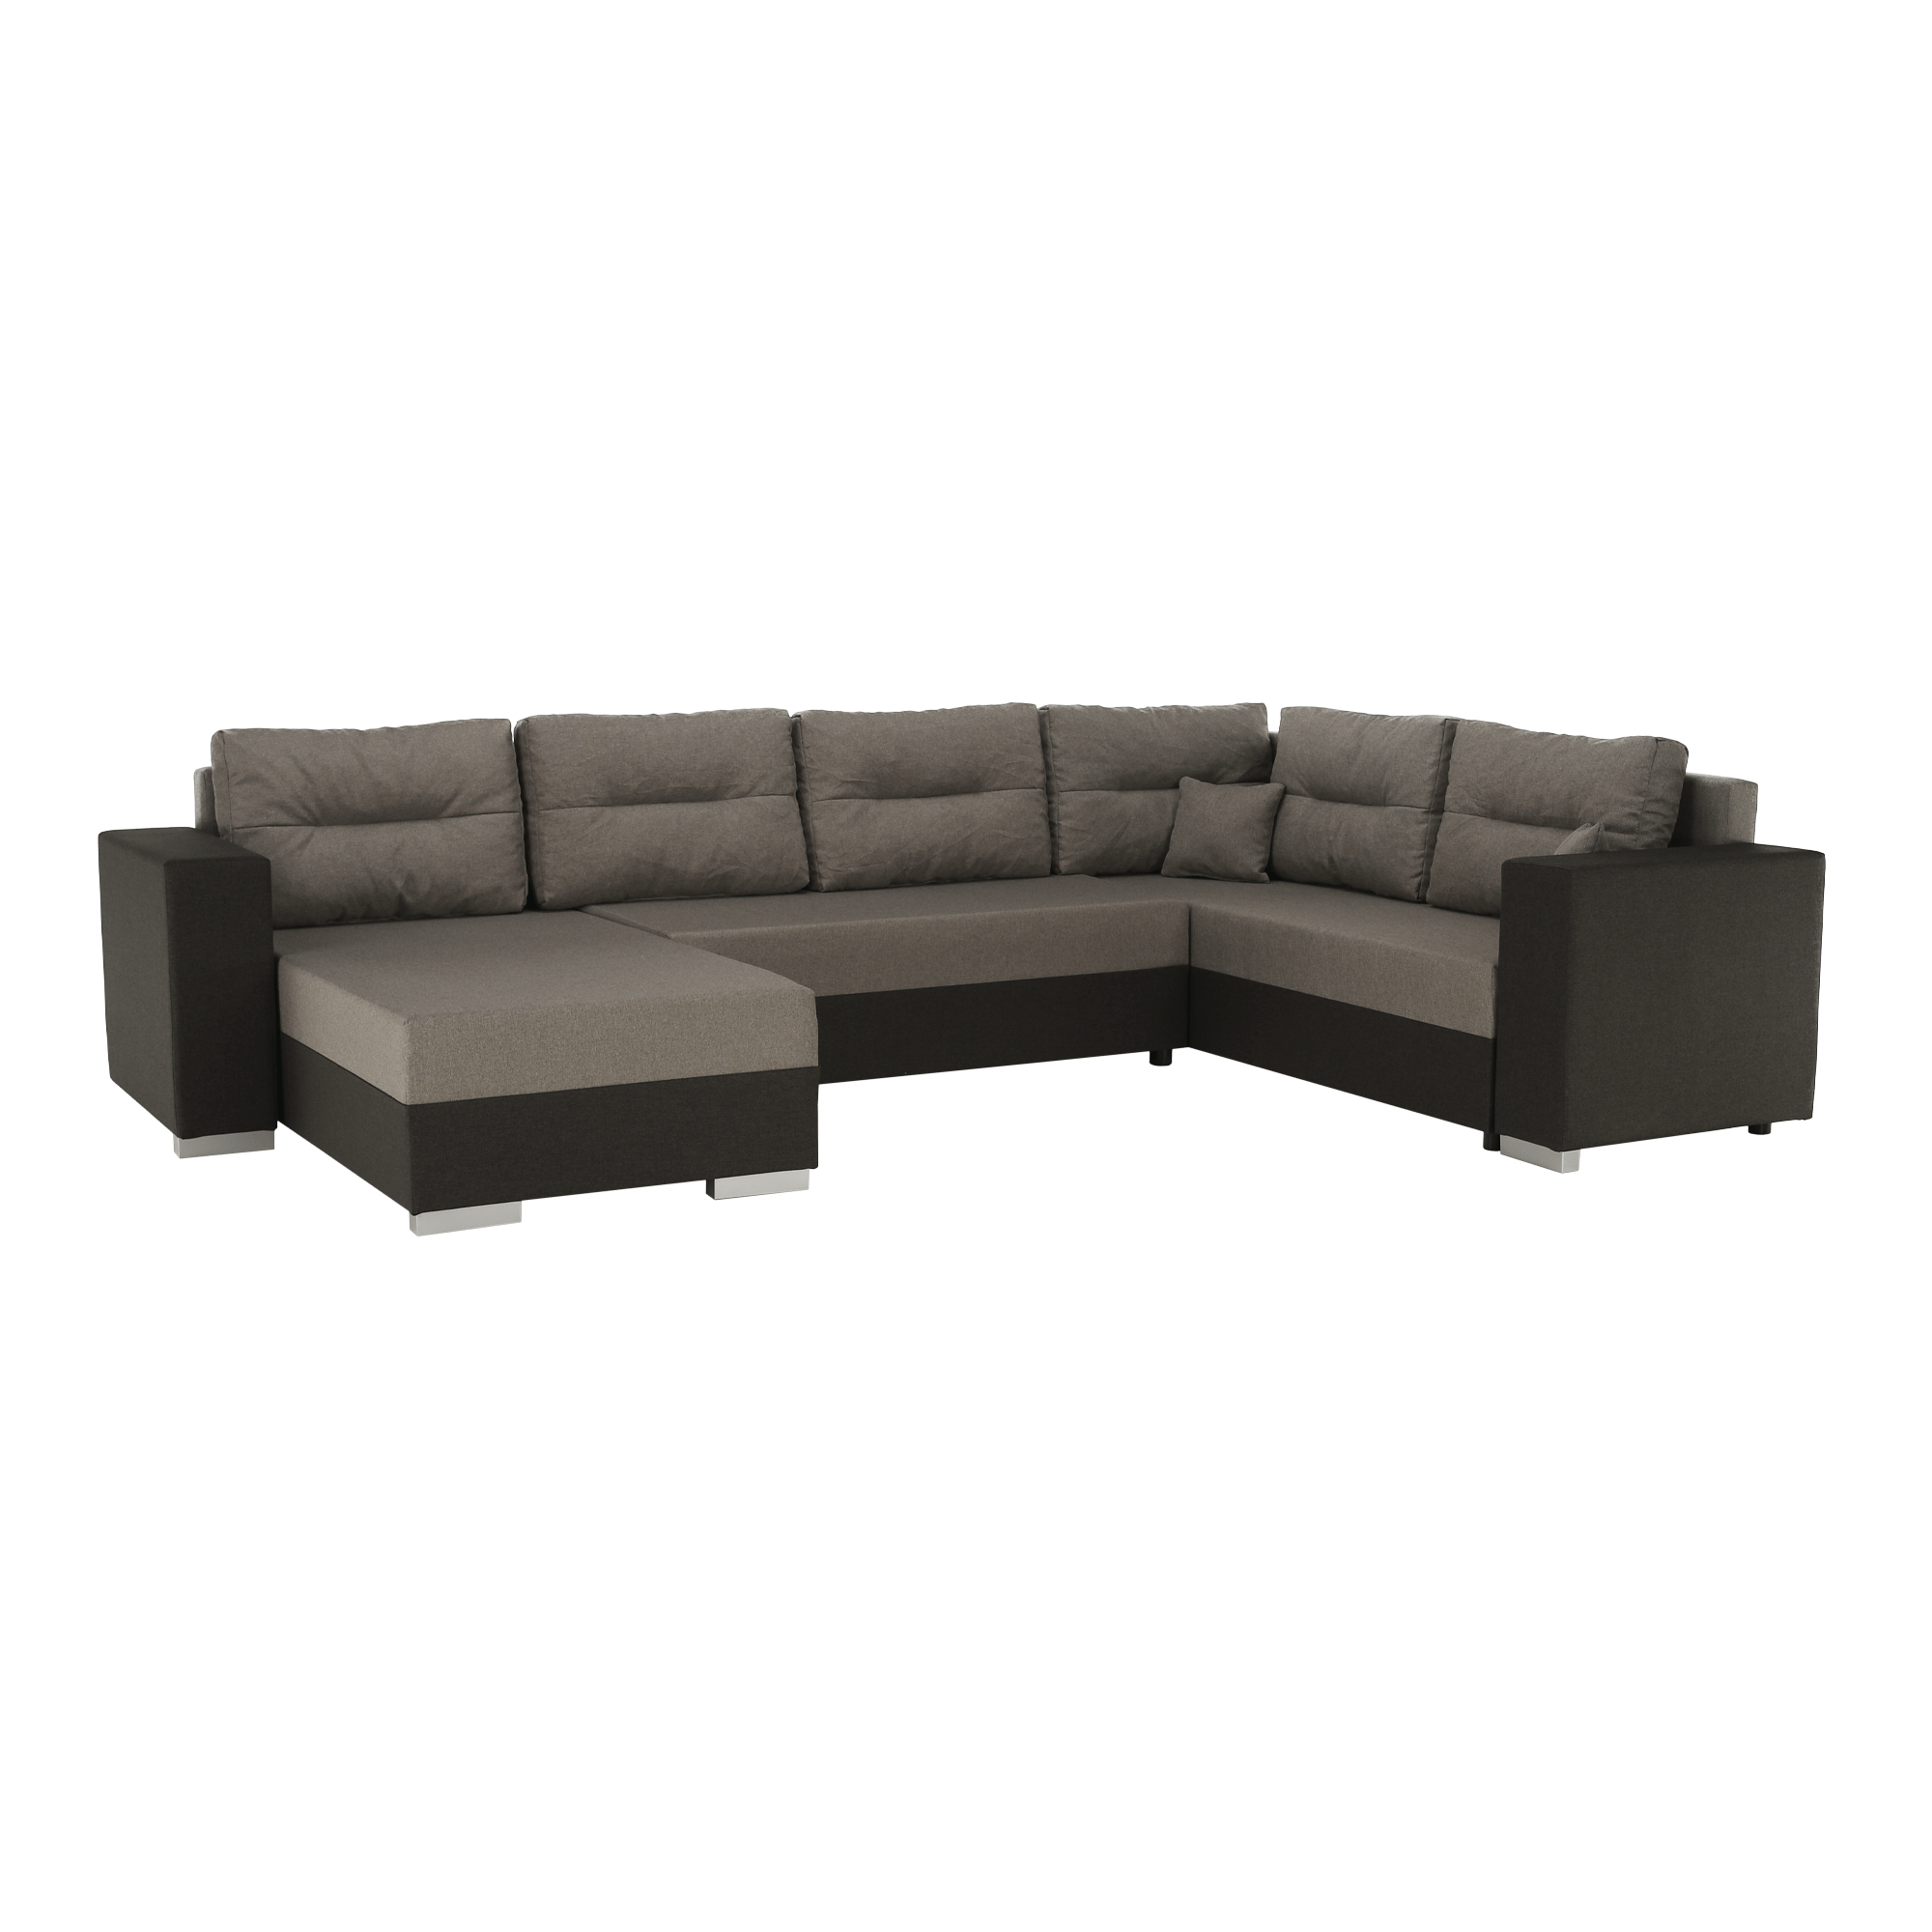 Canapea universală, maro / gri-maro, BRENDA